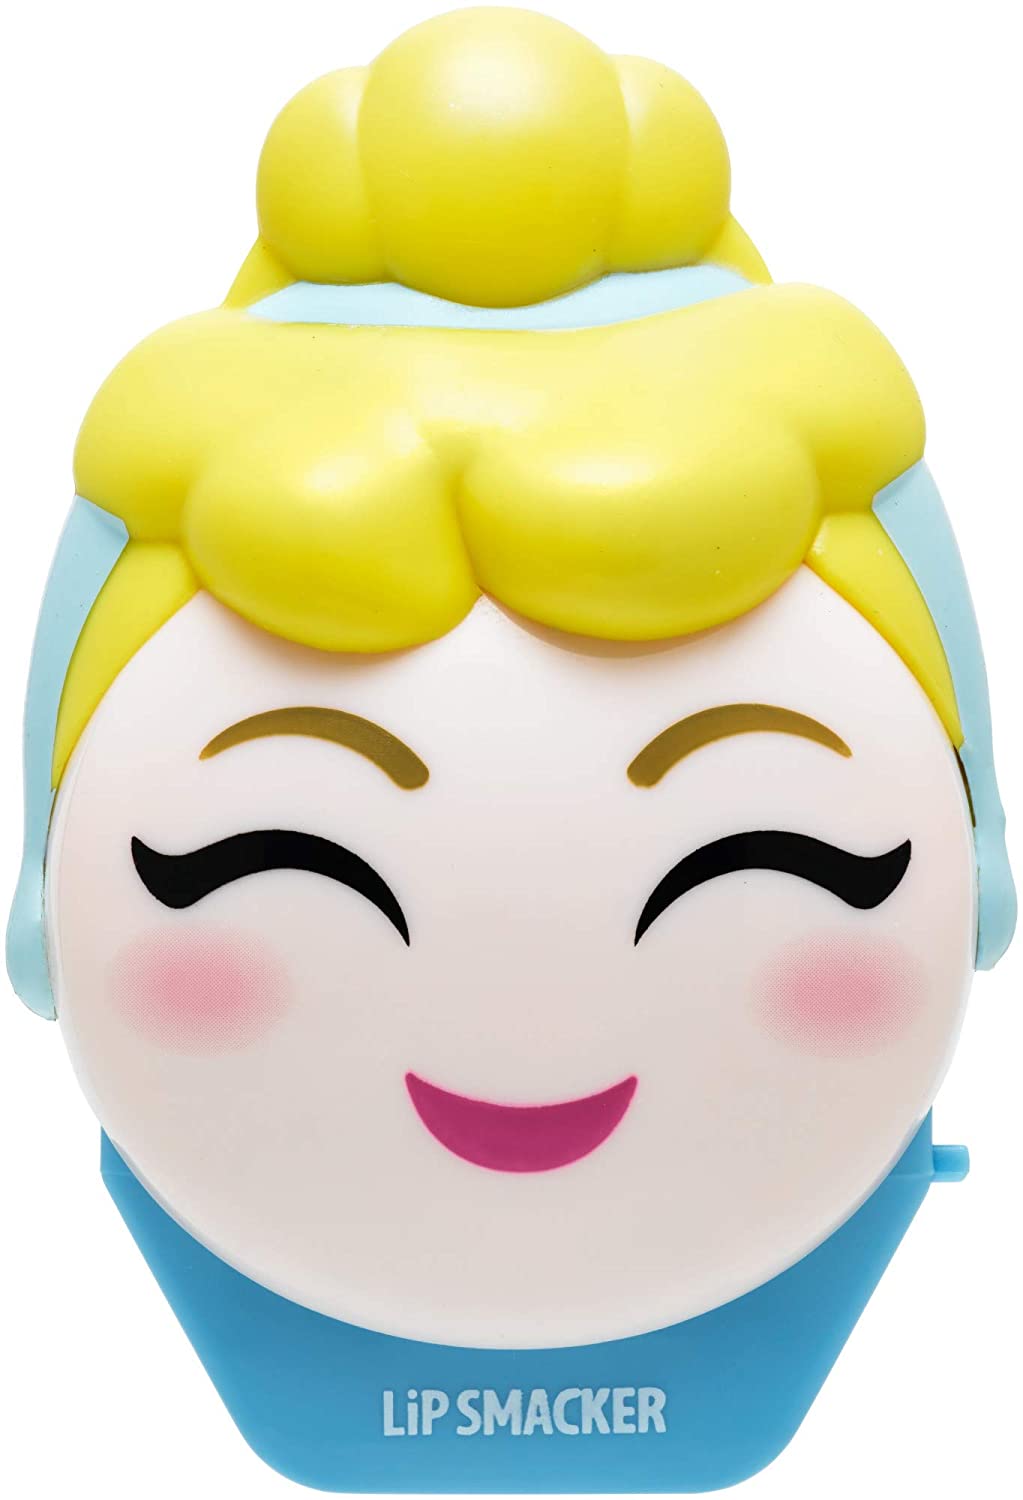 Disney Emoji Lip Smacker Cinderella #BibbityBobbityBerry Flavor 7.4 g